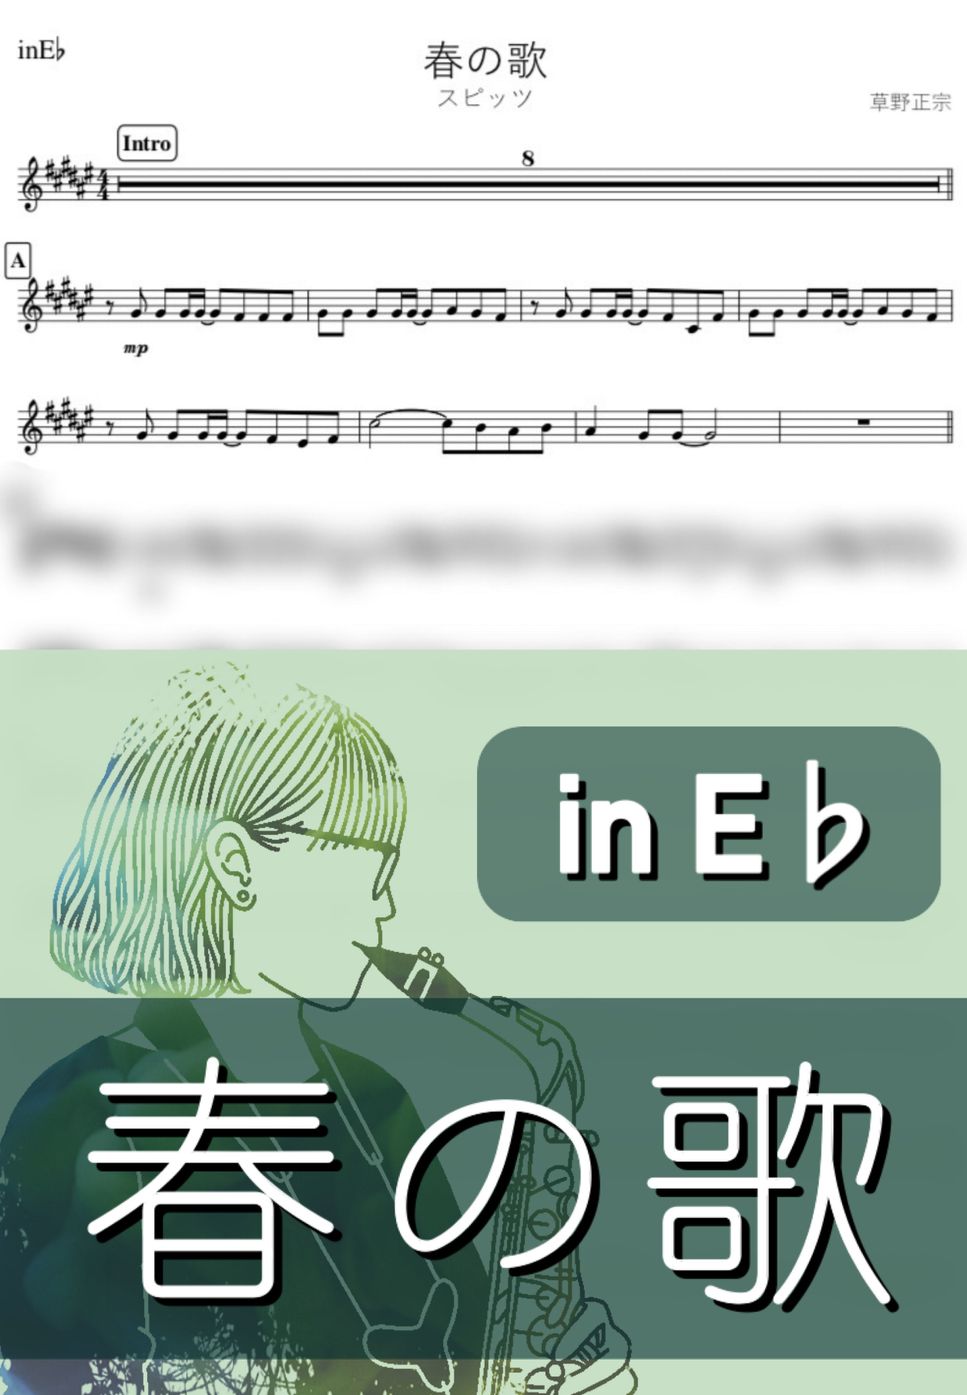 スピッツ - 春の歌 (E♭) by kanamusic